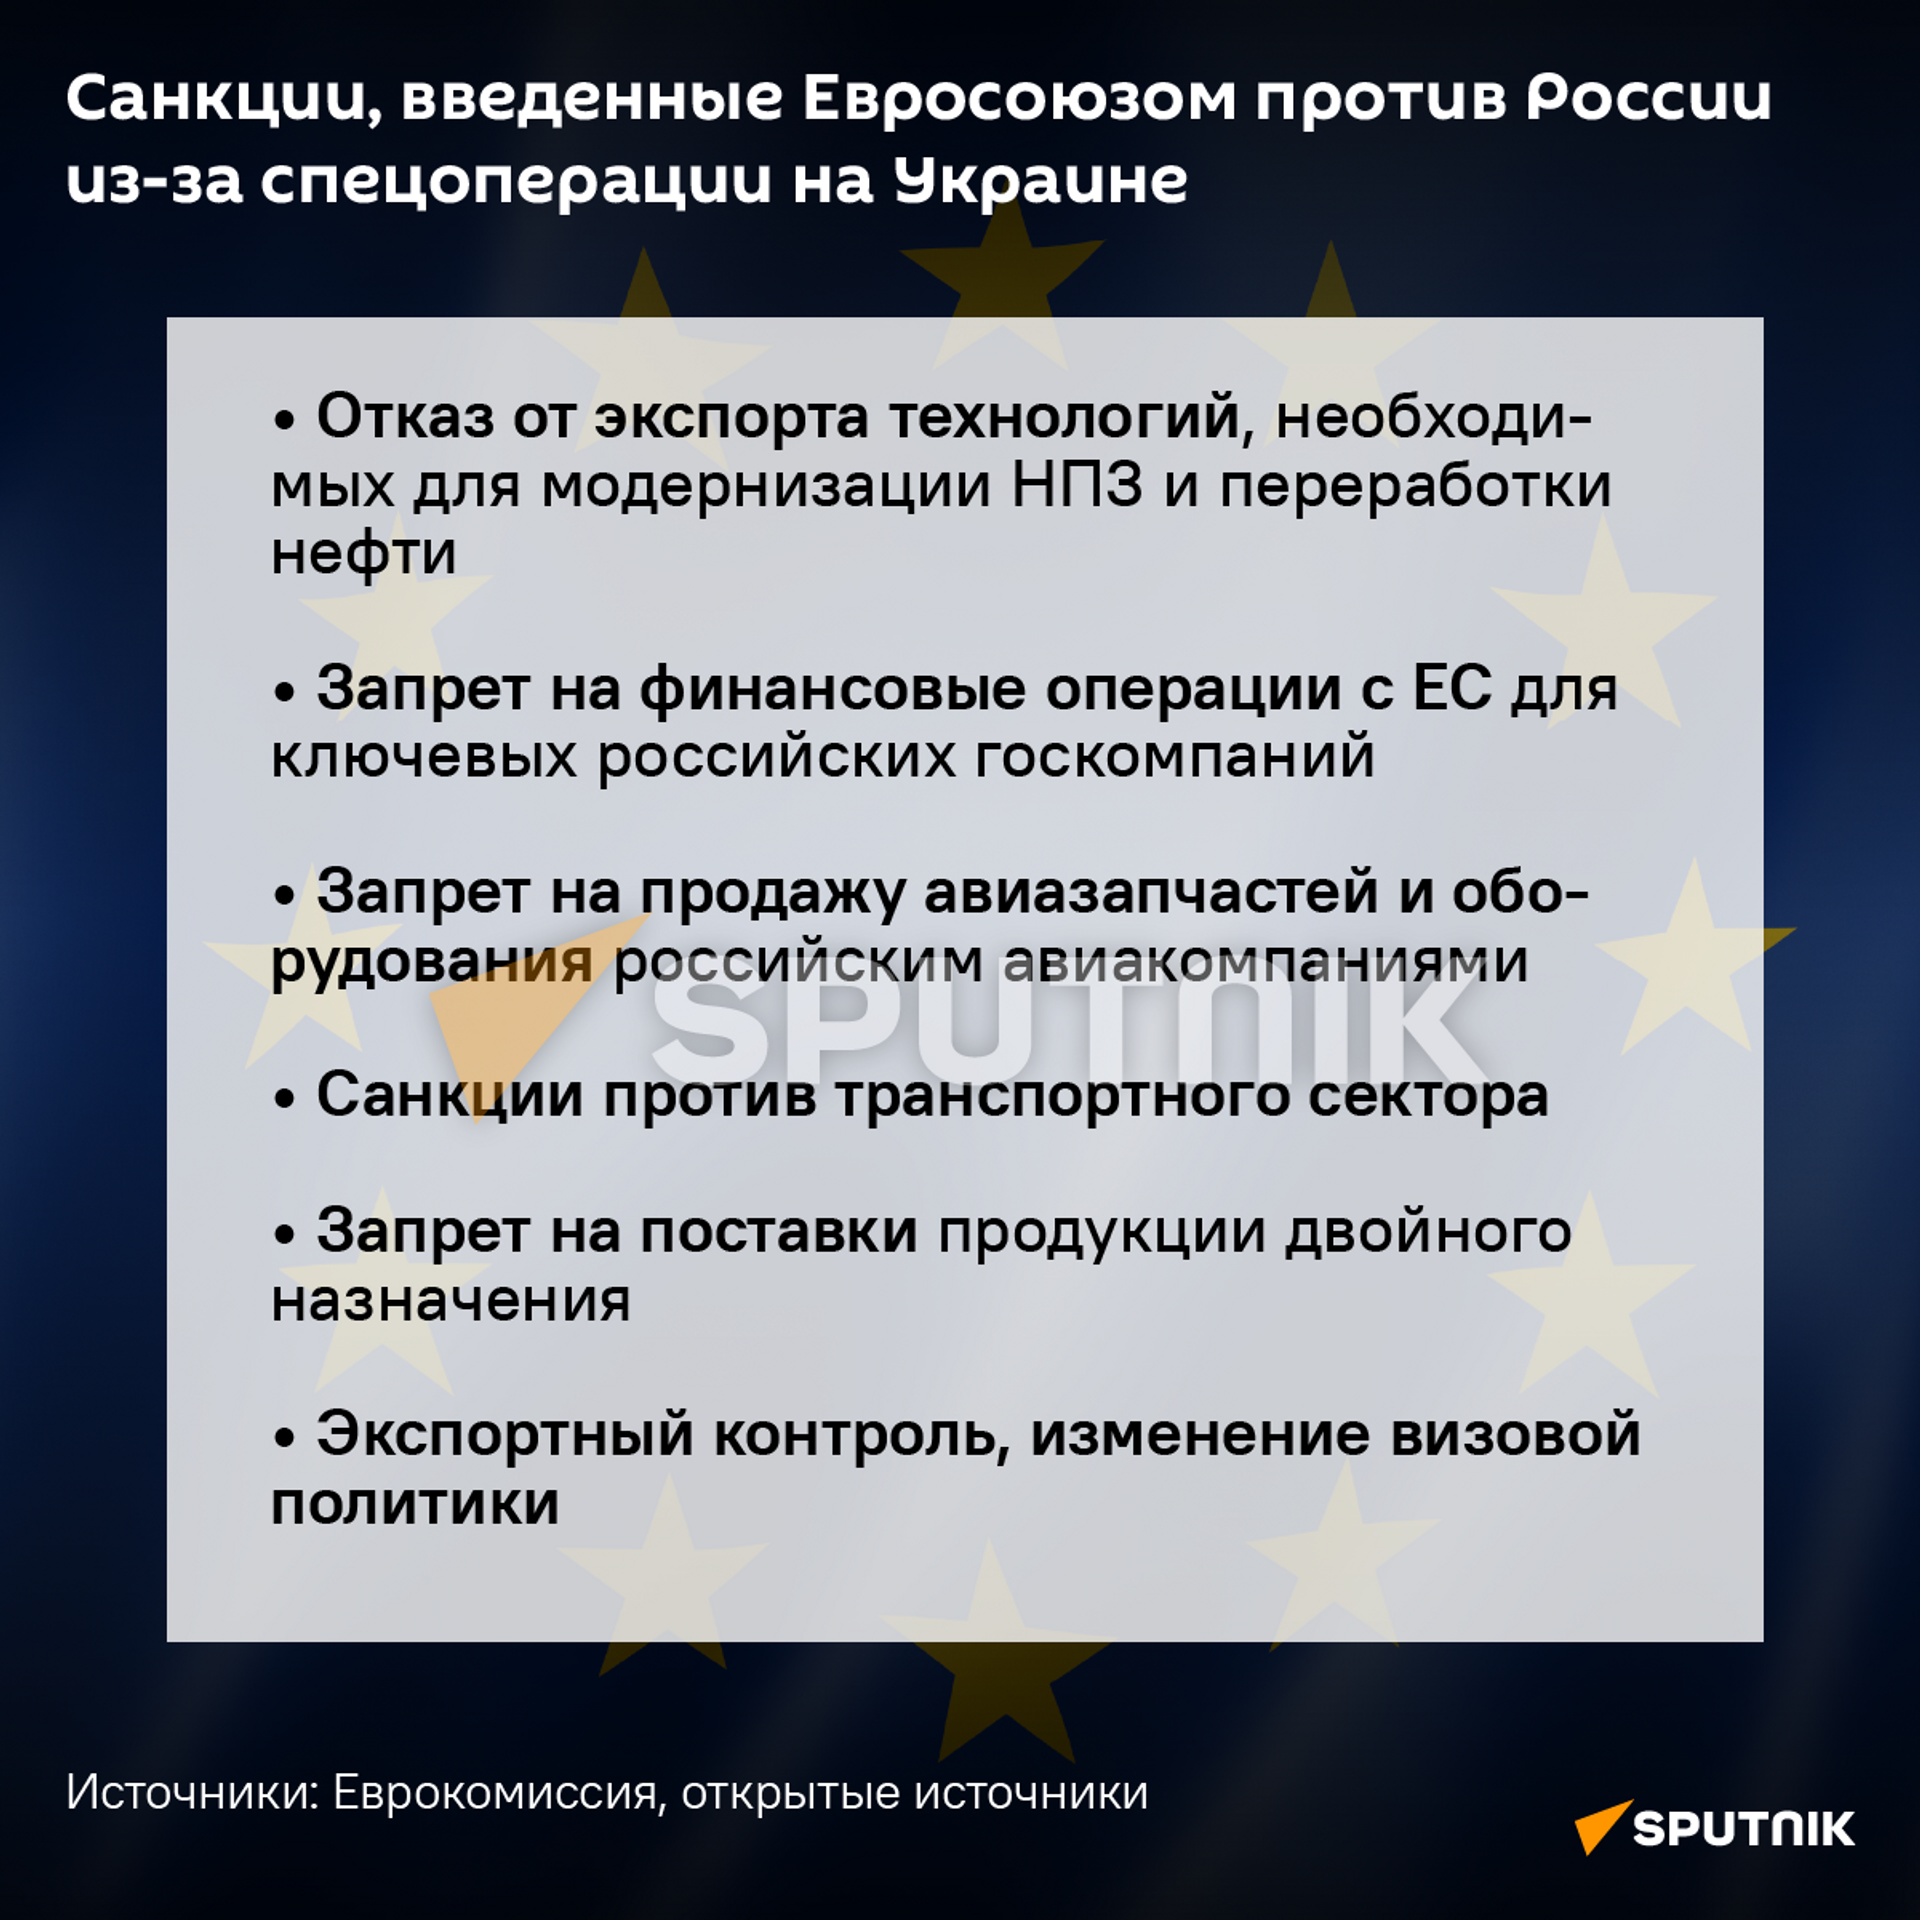 Санкции Евросоюза, введенные против России - Sputnik Узбекистан, 1920, 26.02.2022